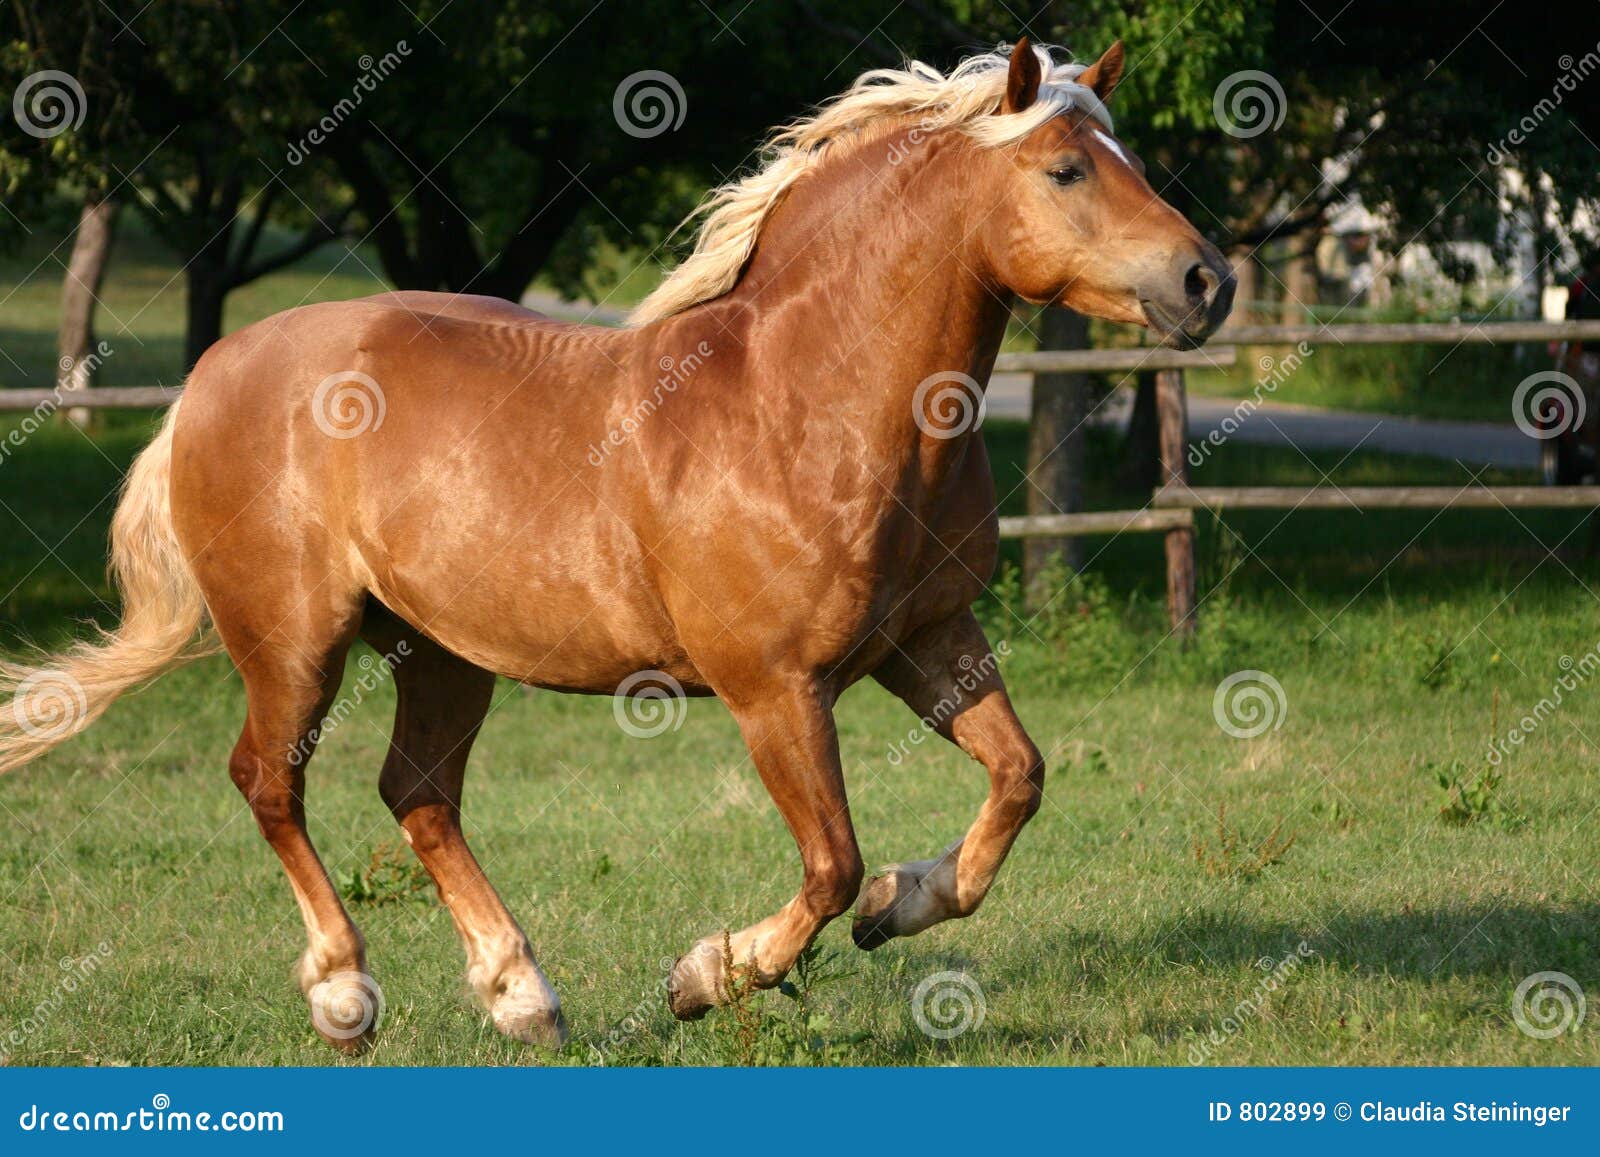 running-haflinger-horse-802899.jpg